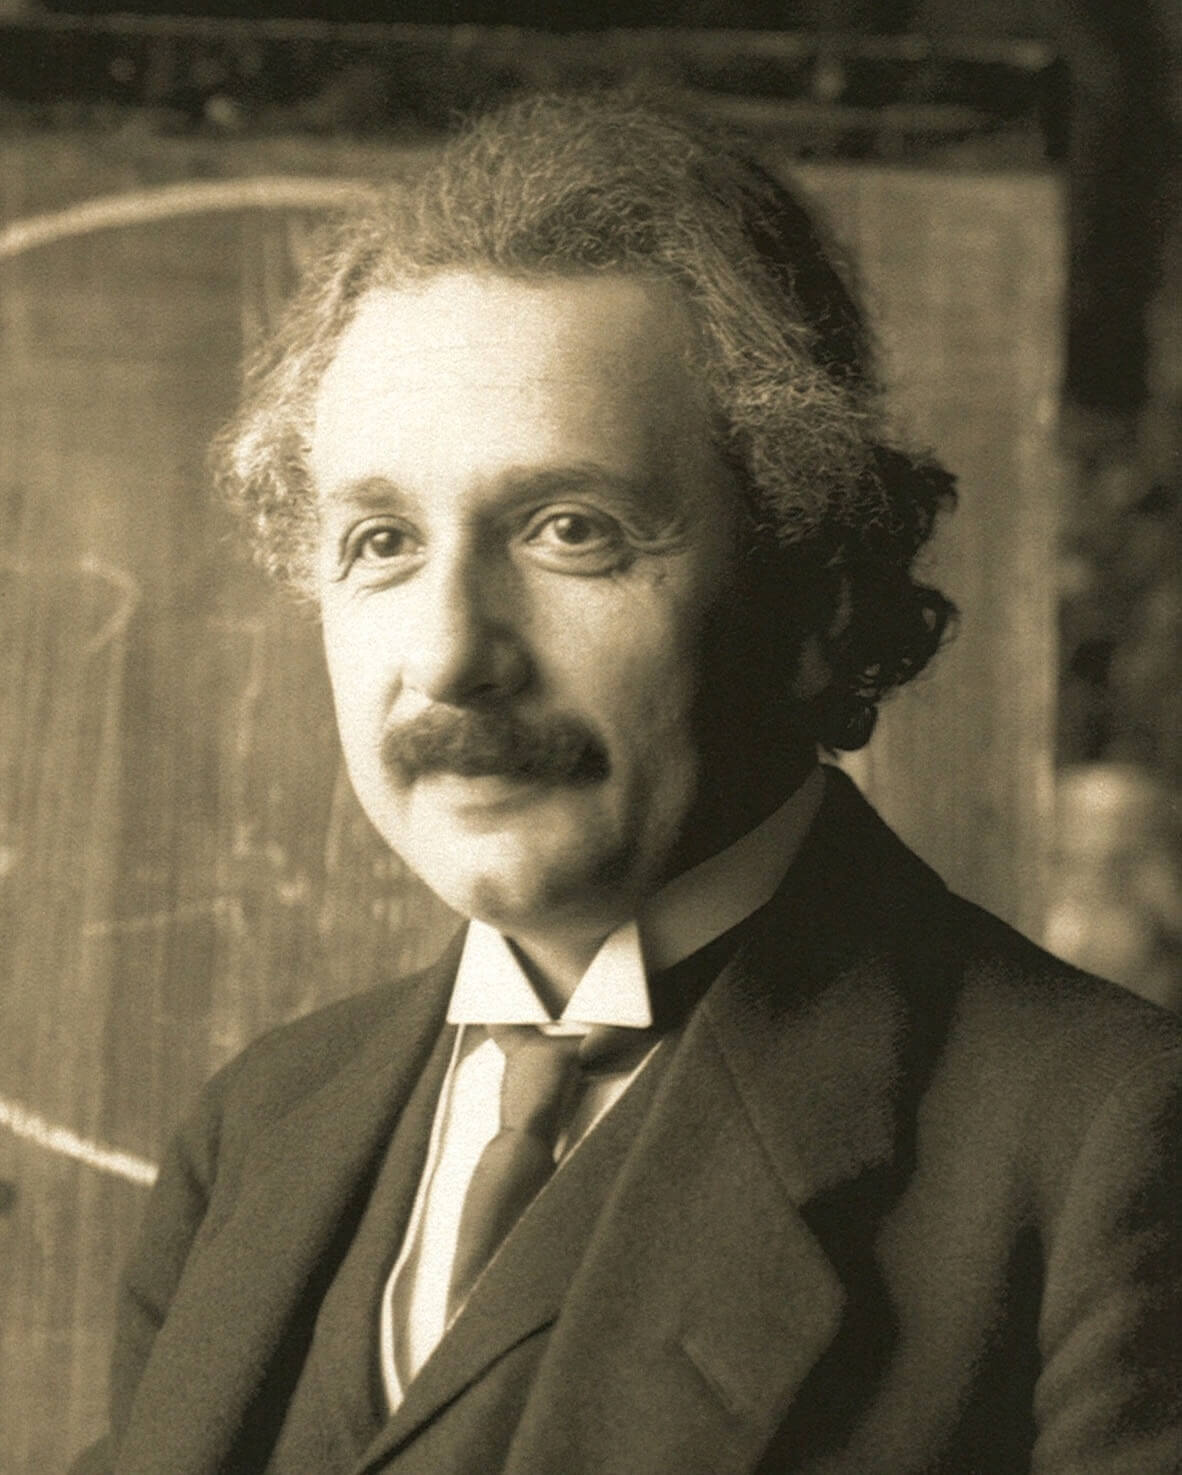 感動の名言 アインシュタインの名言の解説1 過去から学び 今日のために生き 未来に対して希望をもつ Rinrism 遊べる学び舎